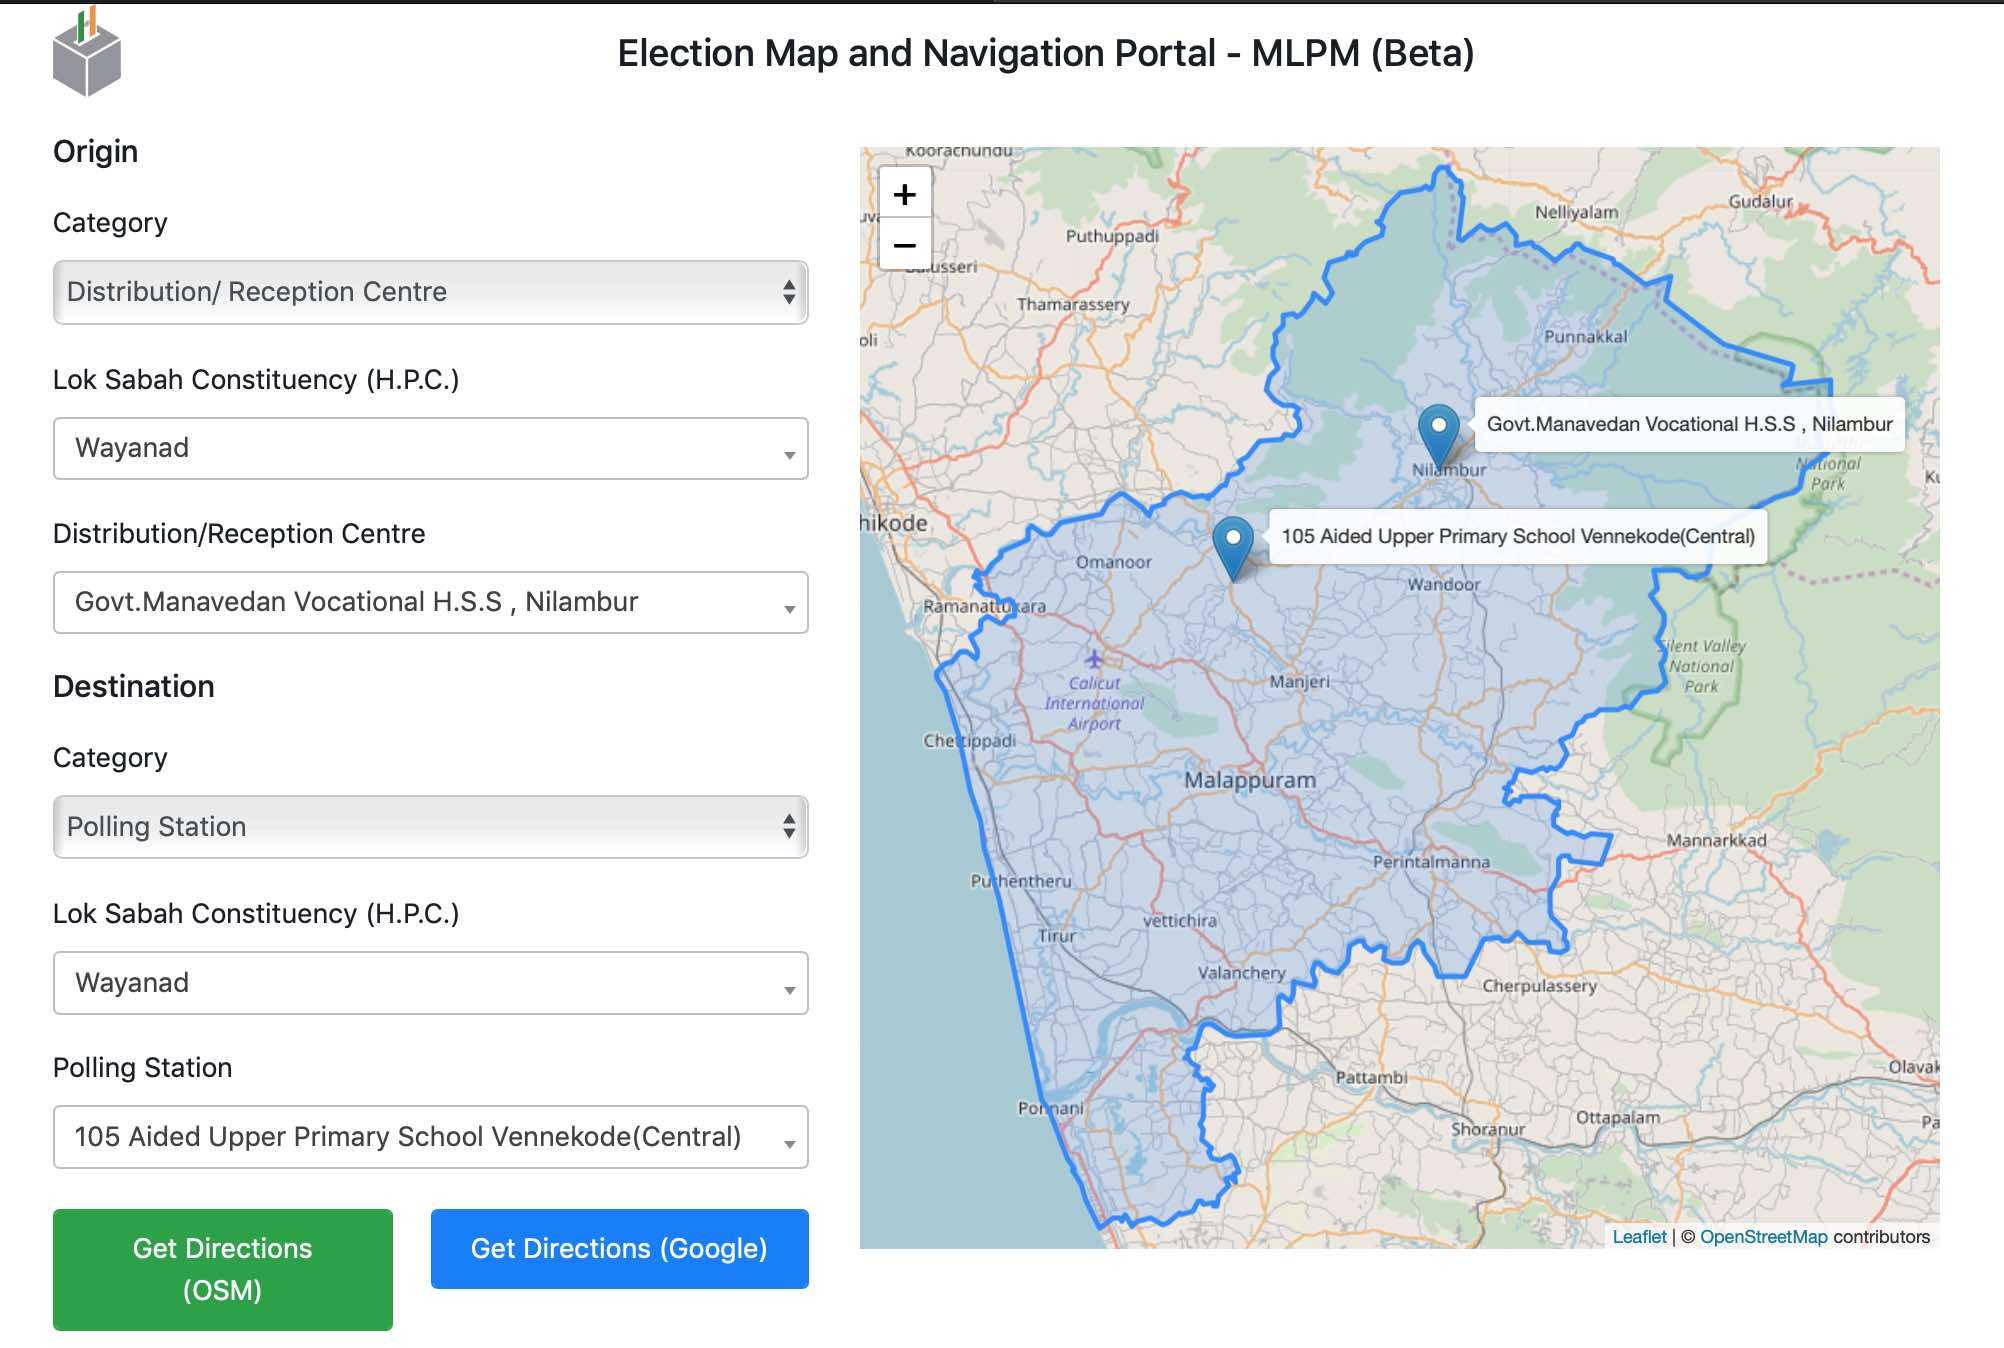 Election and Navigation Portal